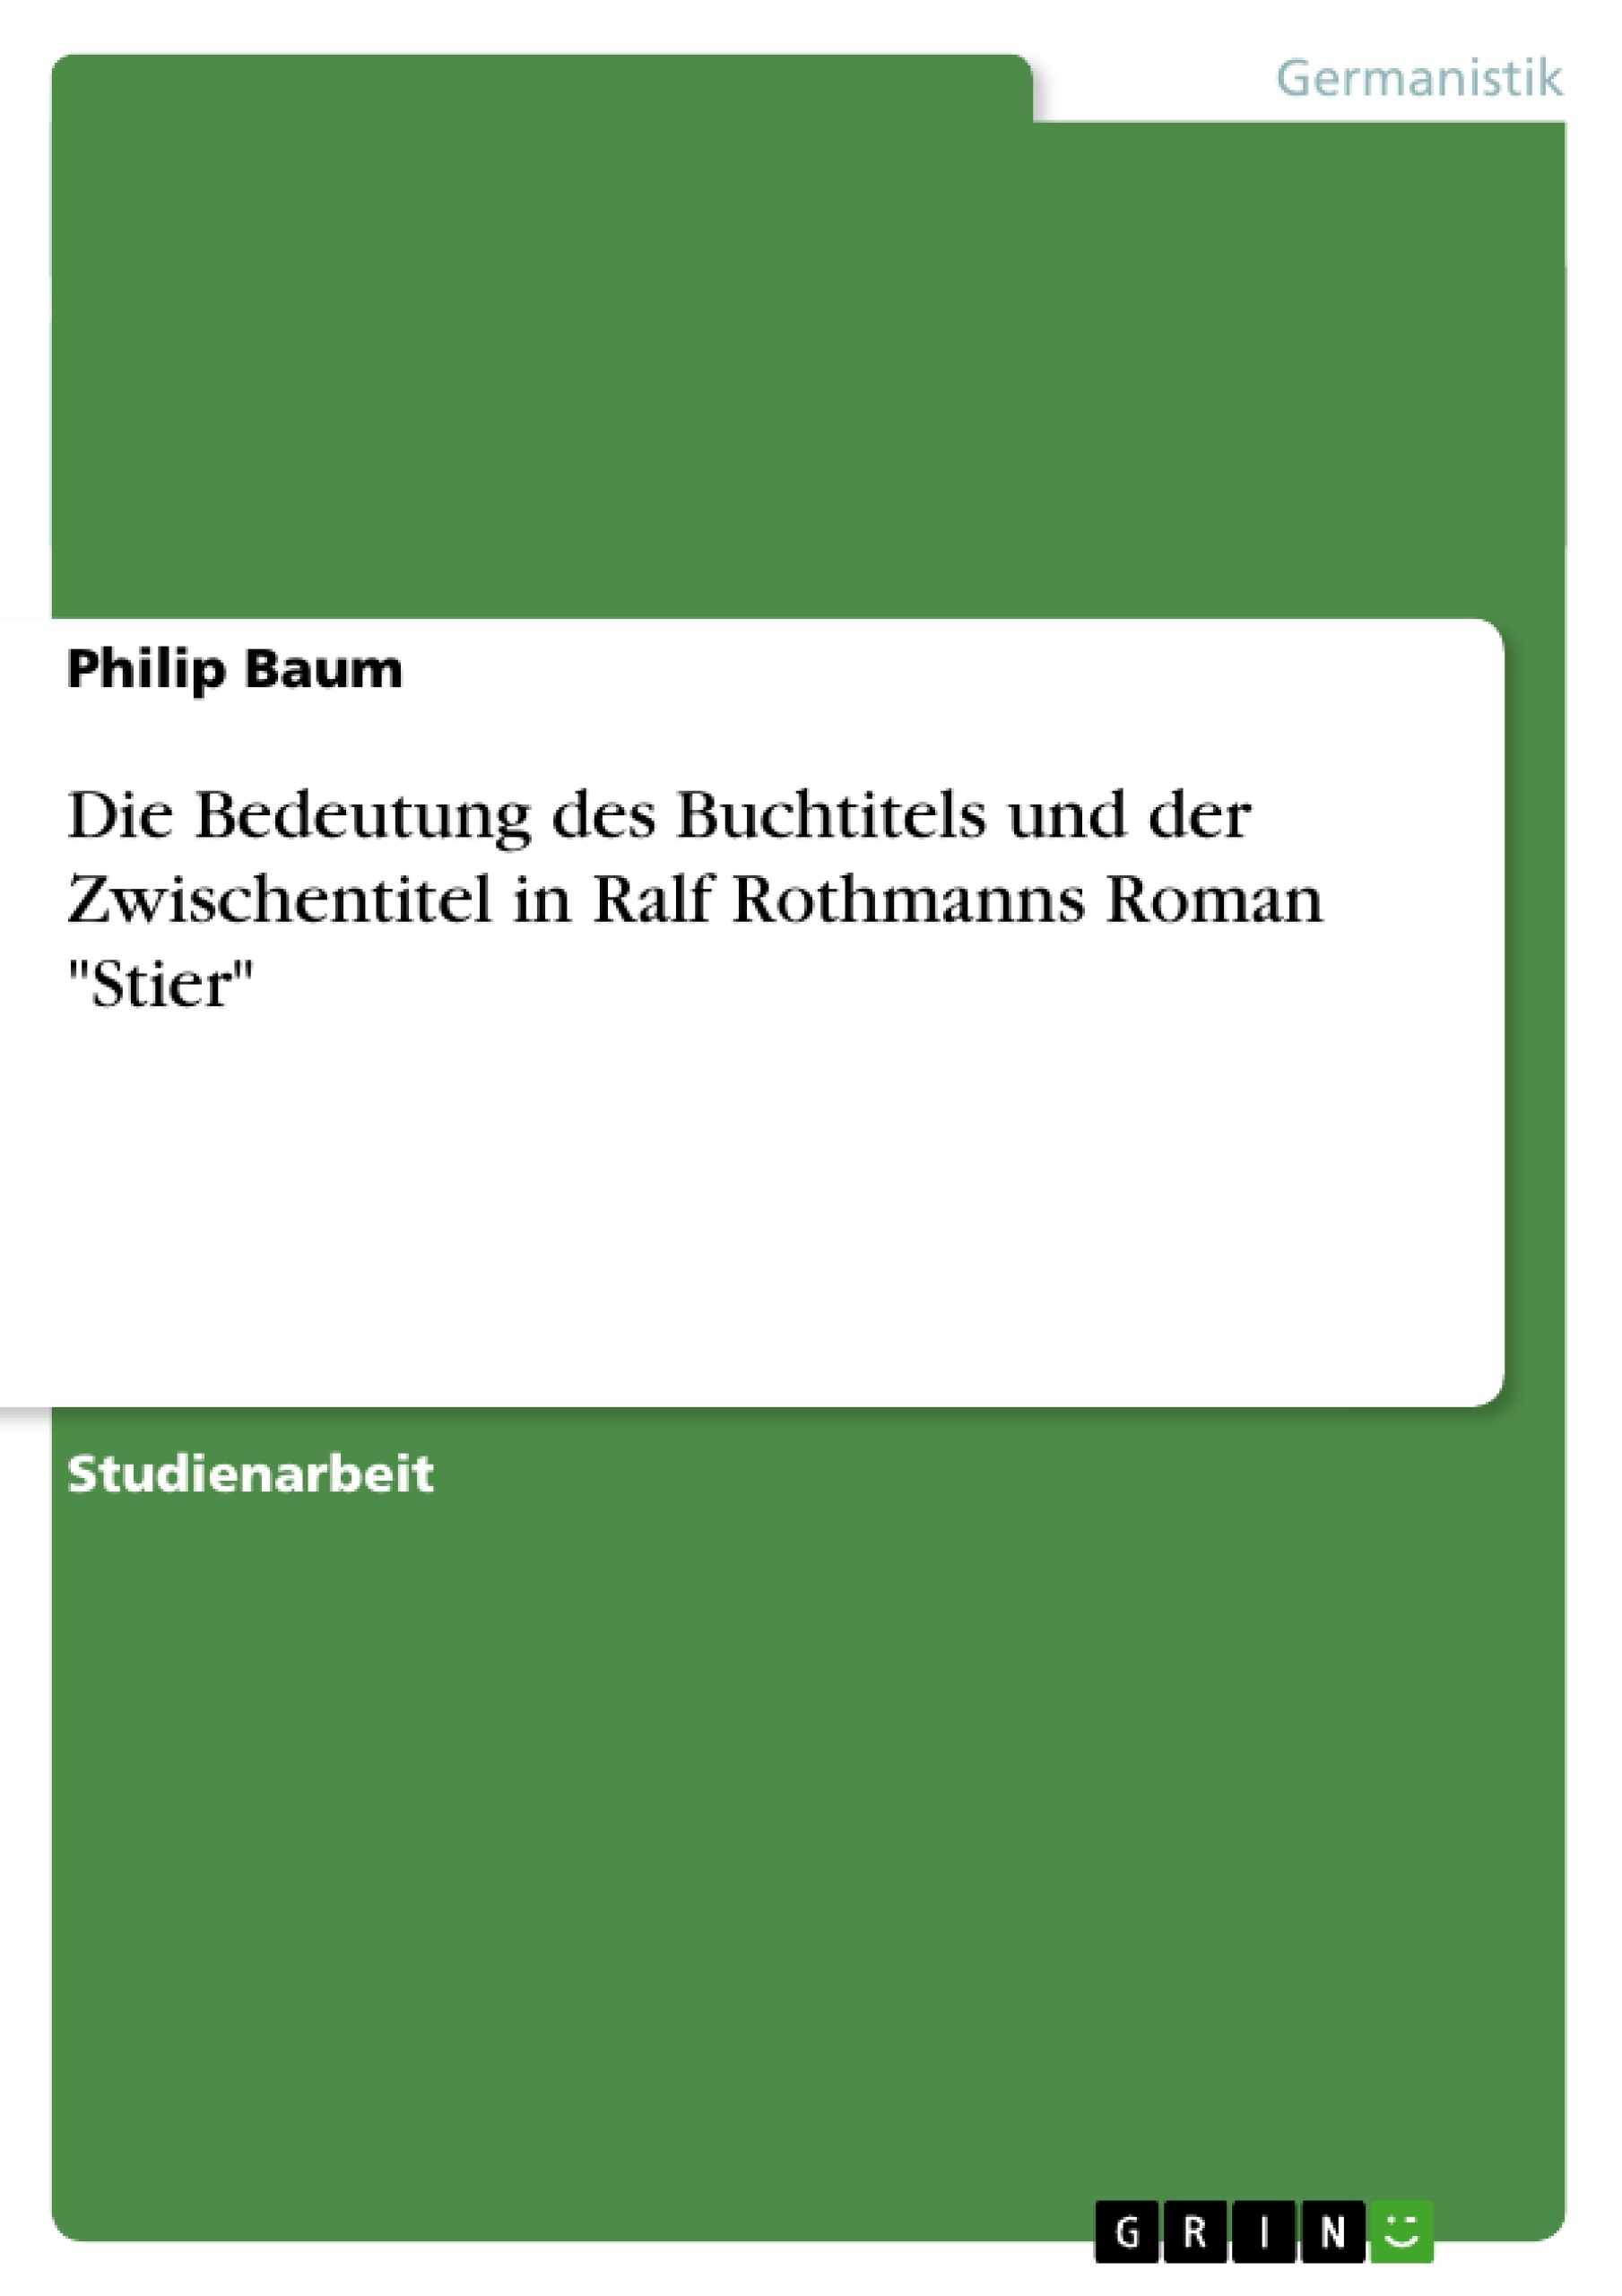 Title: Die Bedeutung des Buchtitels und der Zwischentitel in Ralf Rothmanns Roman "Stier"